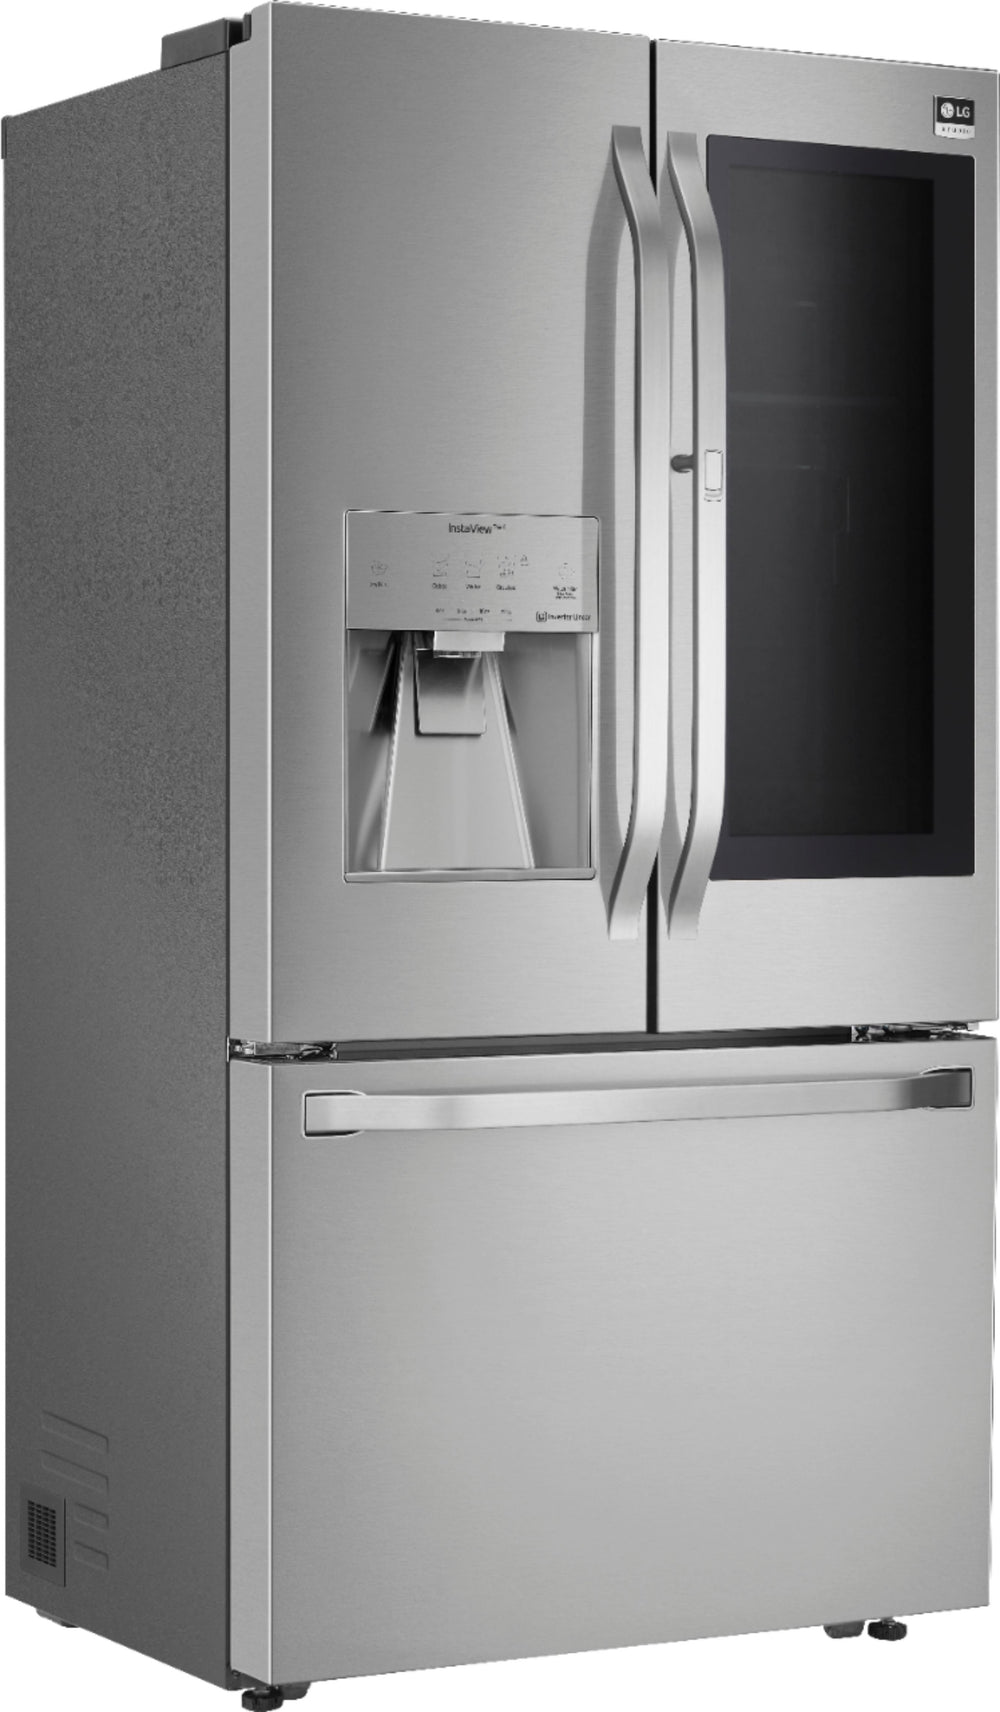 LG - STUDIO 23.5 Cu. Ft. French InstaView Door-in-Door Counter-Depth Refrigerator with Craft Ice - Stainless steel_1